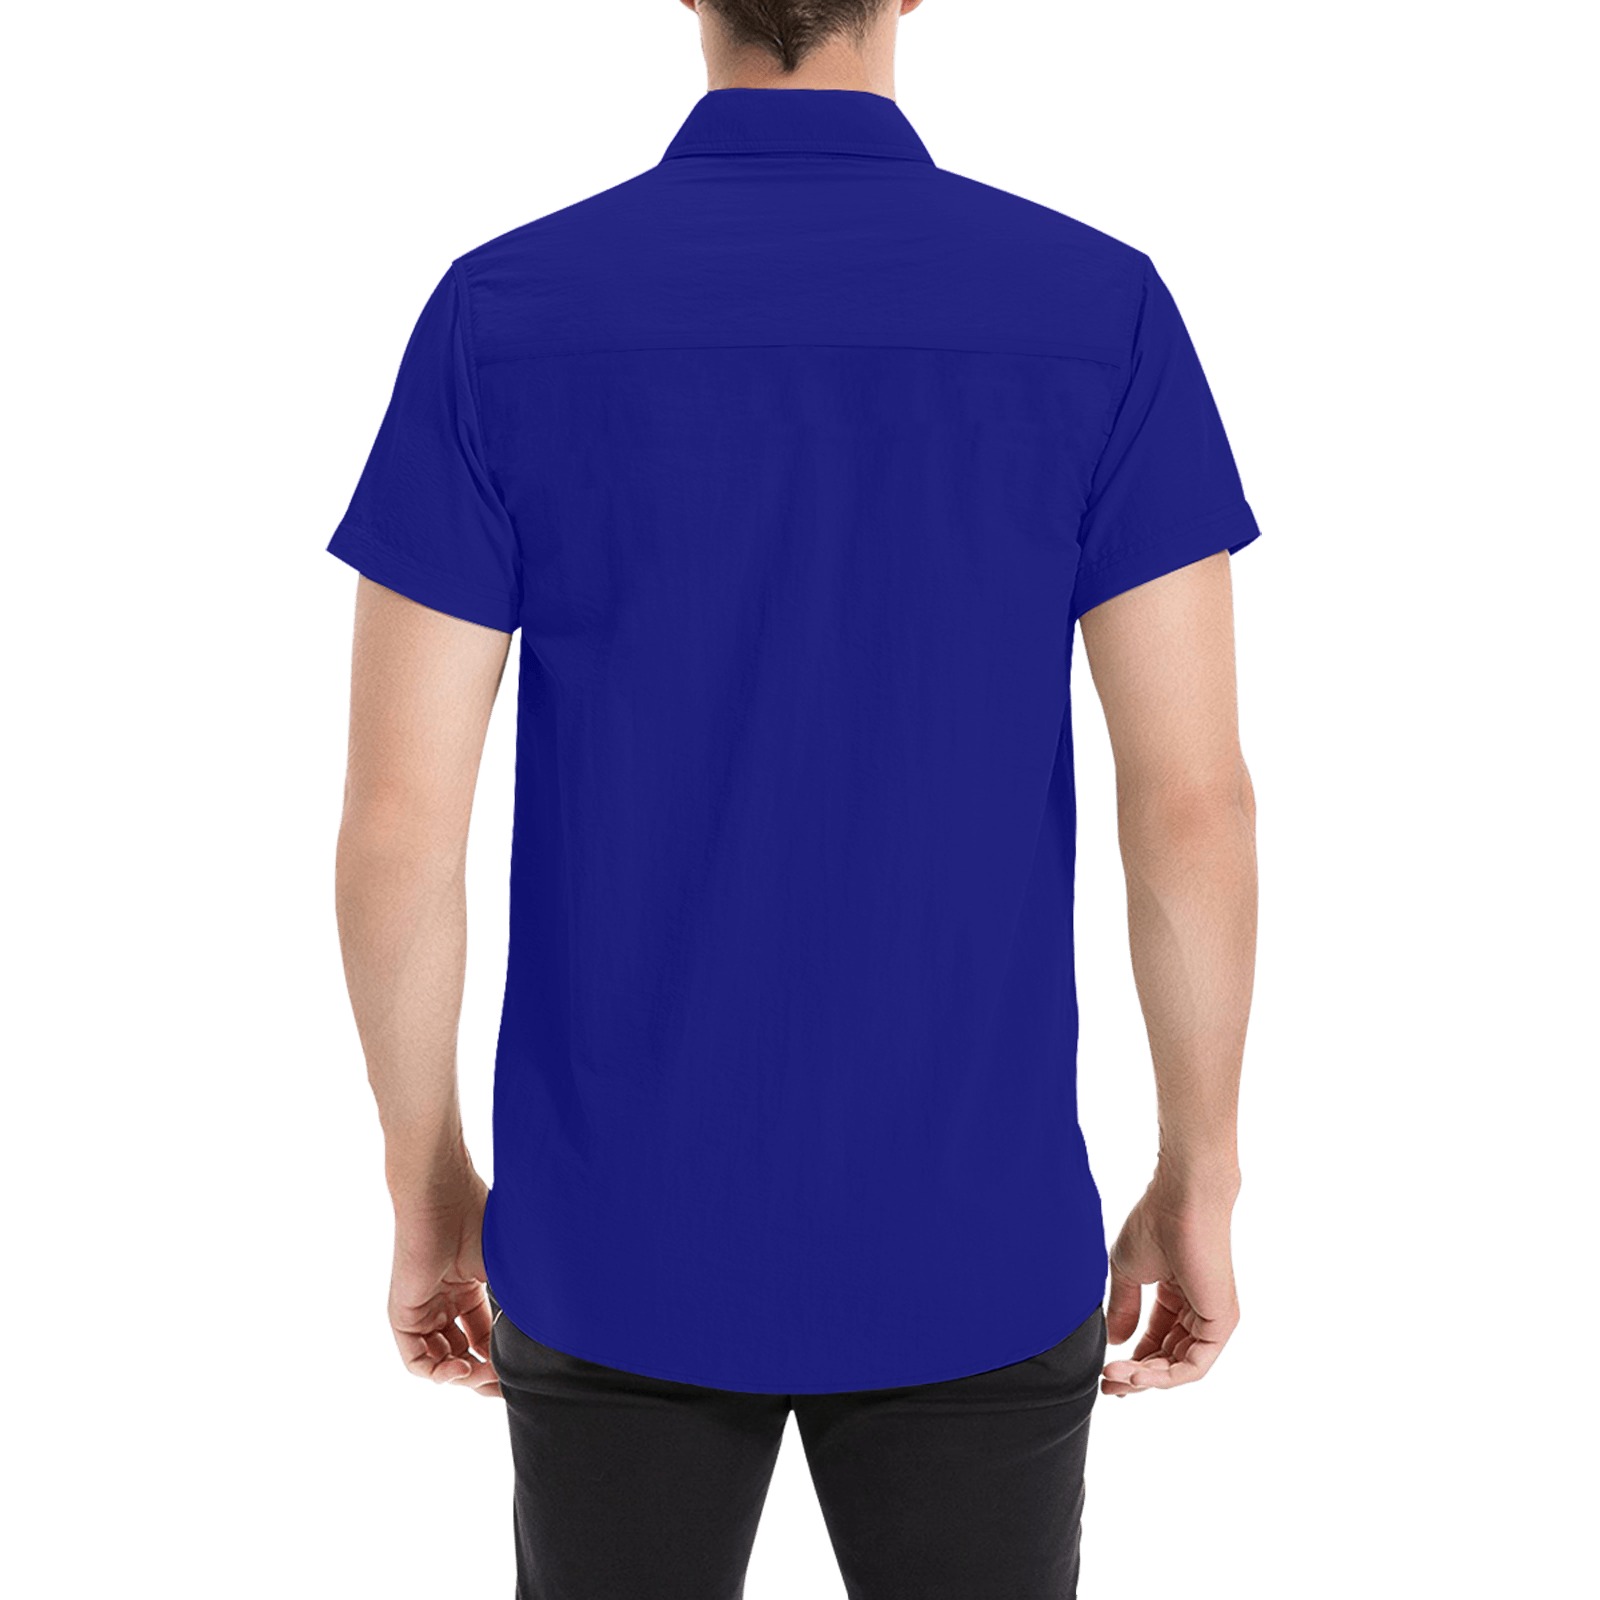 Eat Drink Dance Breakdance / Blue Men's All Over Print Short Sleeve Shirt (Model T53)